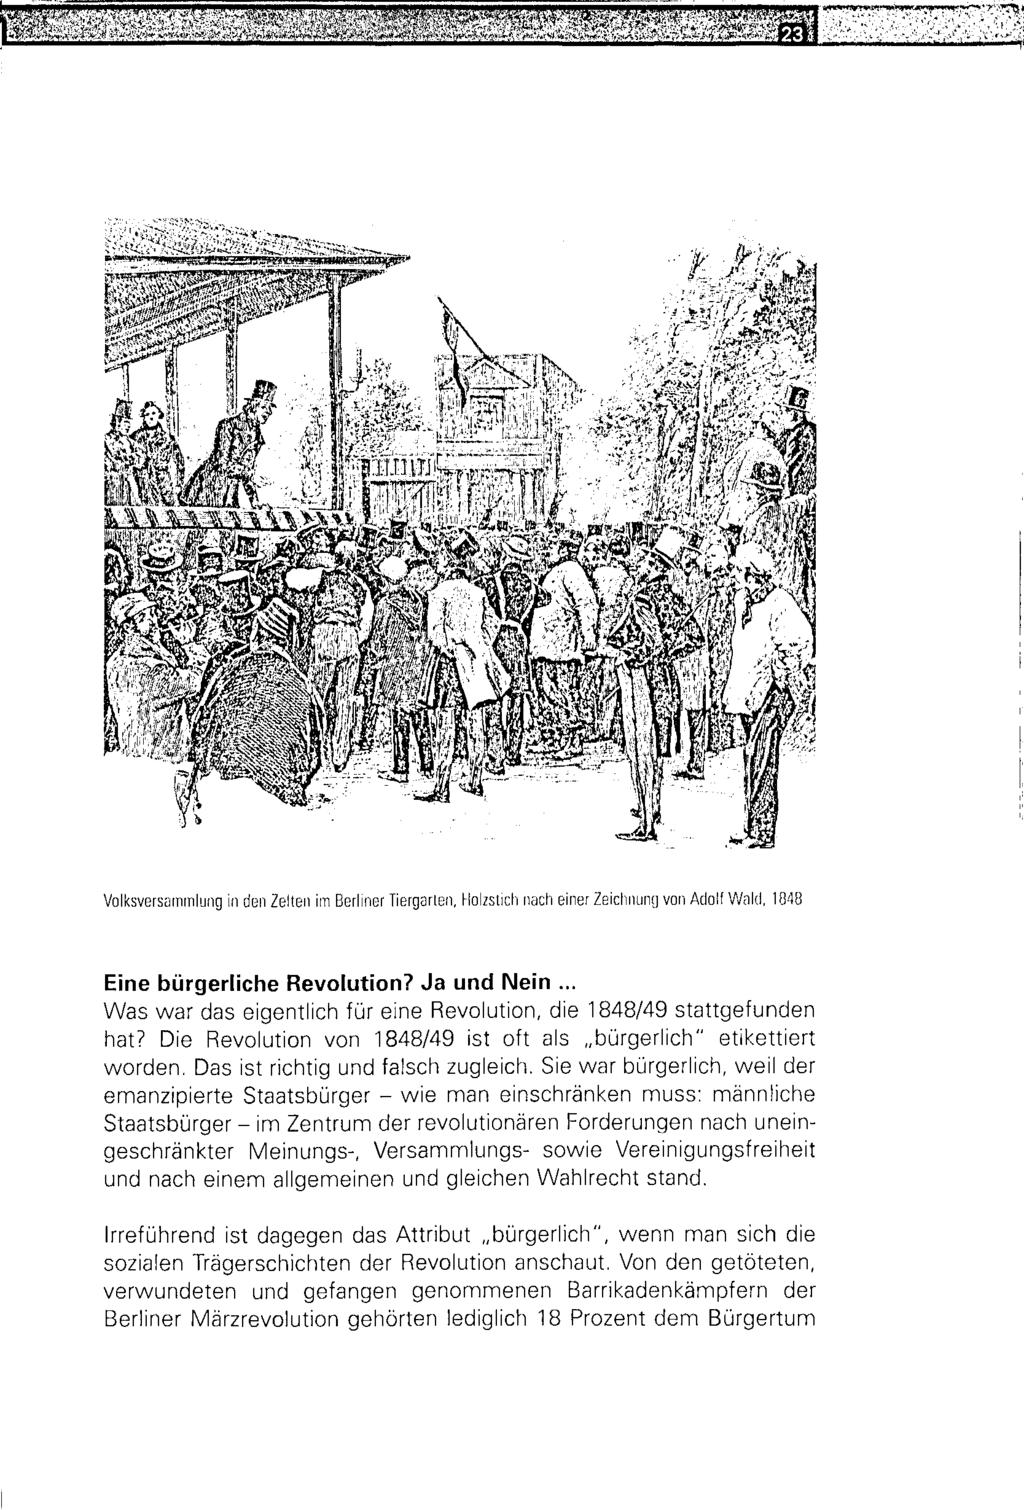 Sl«ä.y ih * ^ j rjt^^.ti-^ s n, m?>»w,r http://dx.doi.org/10.14765/zzf.dok.1.883 Volksversammlung in den Zelten im Berliner Tiergarten, Holzstich nach einer Zeichnung von Adolf Wald, 1848 Eine bürgerliche Revolution?